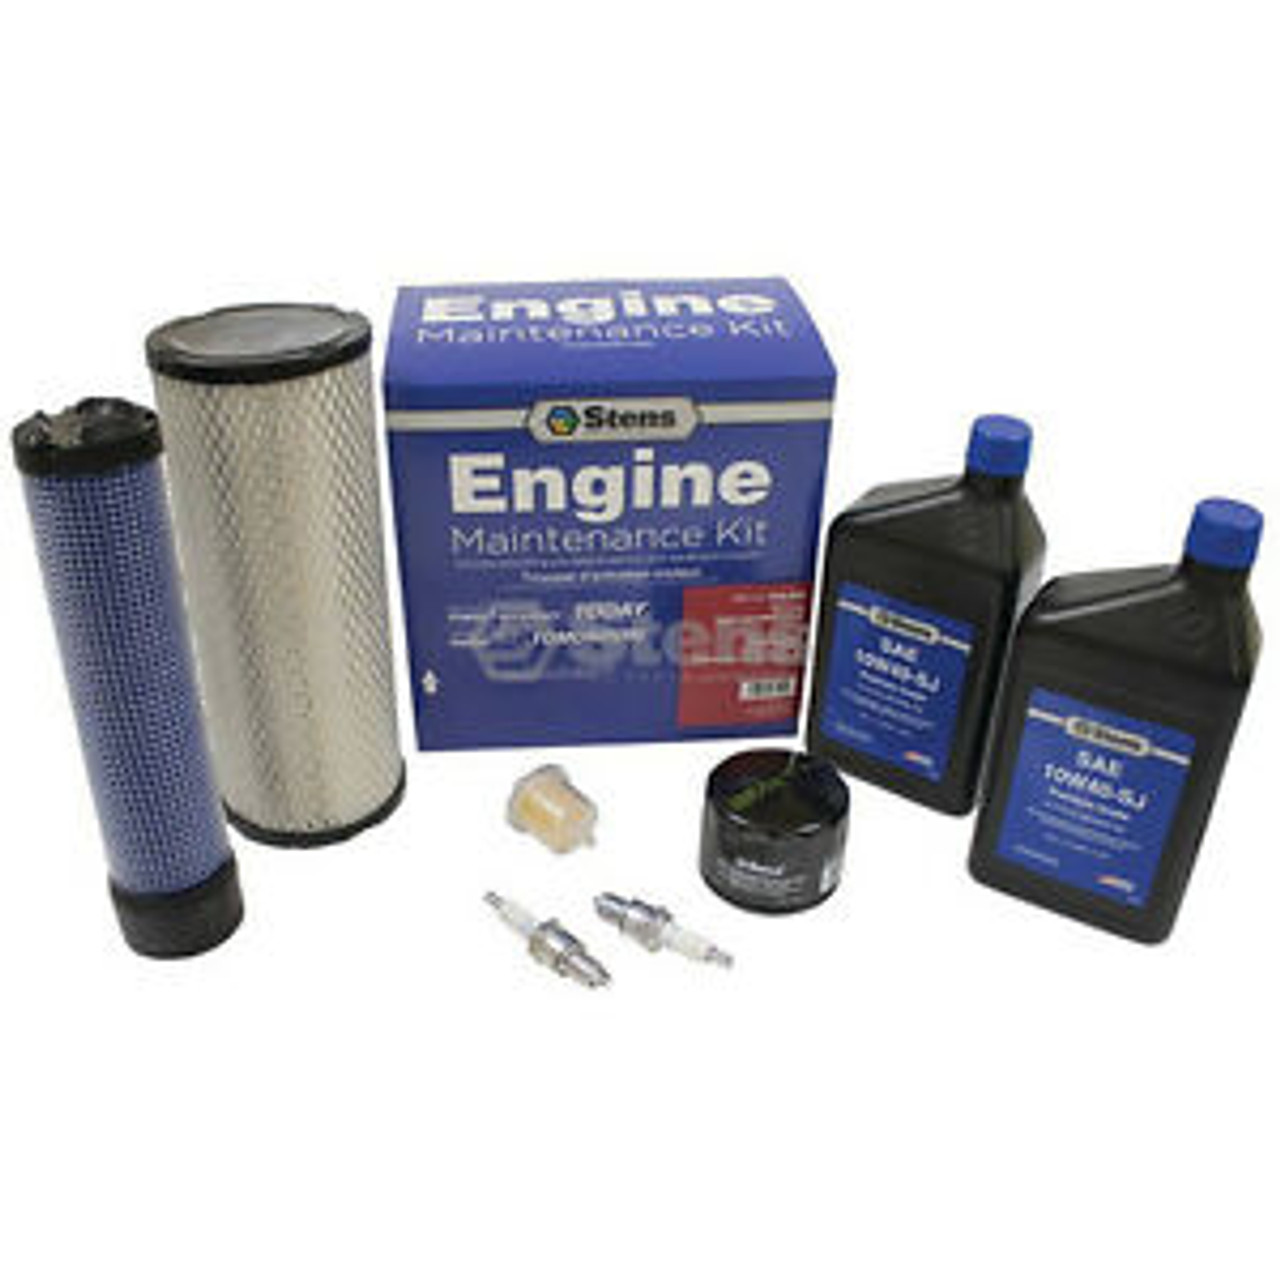 Engine Maintenance Kit 785-698